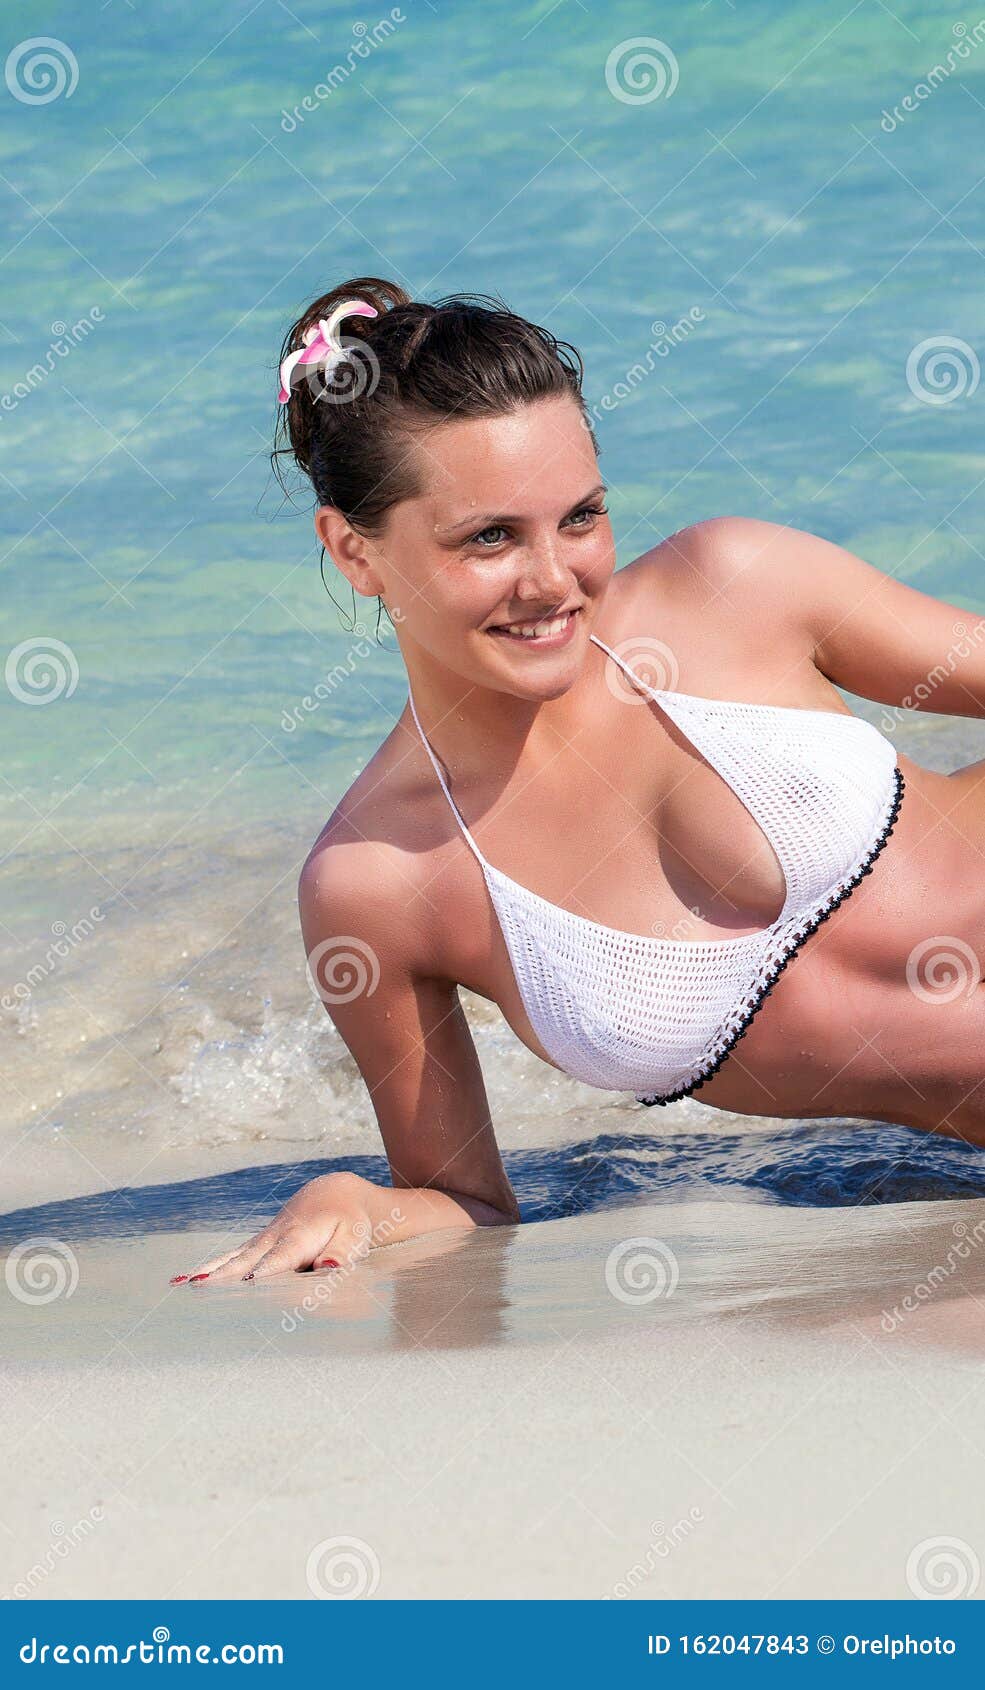 Beach Bikini Beautiful Woman Relaxing Sunbathing on Tropical Vacation